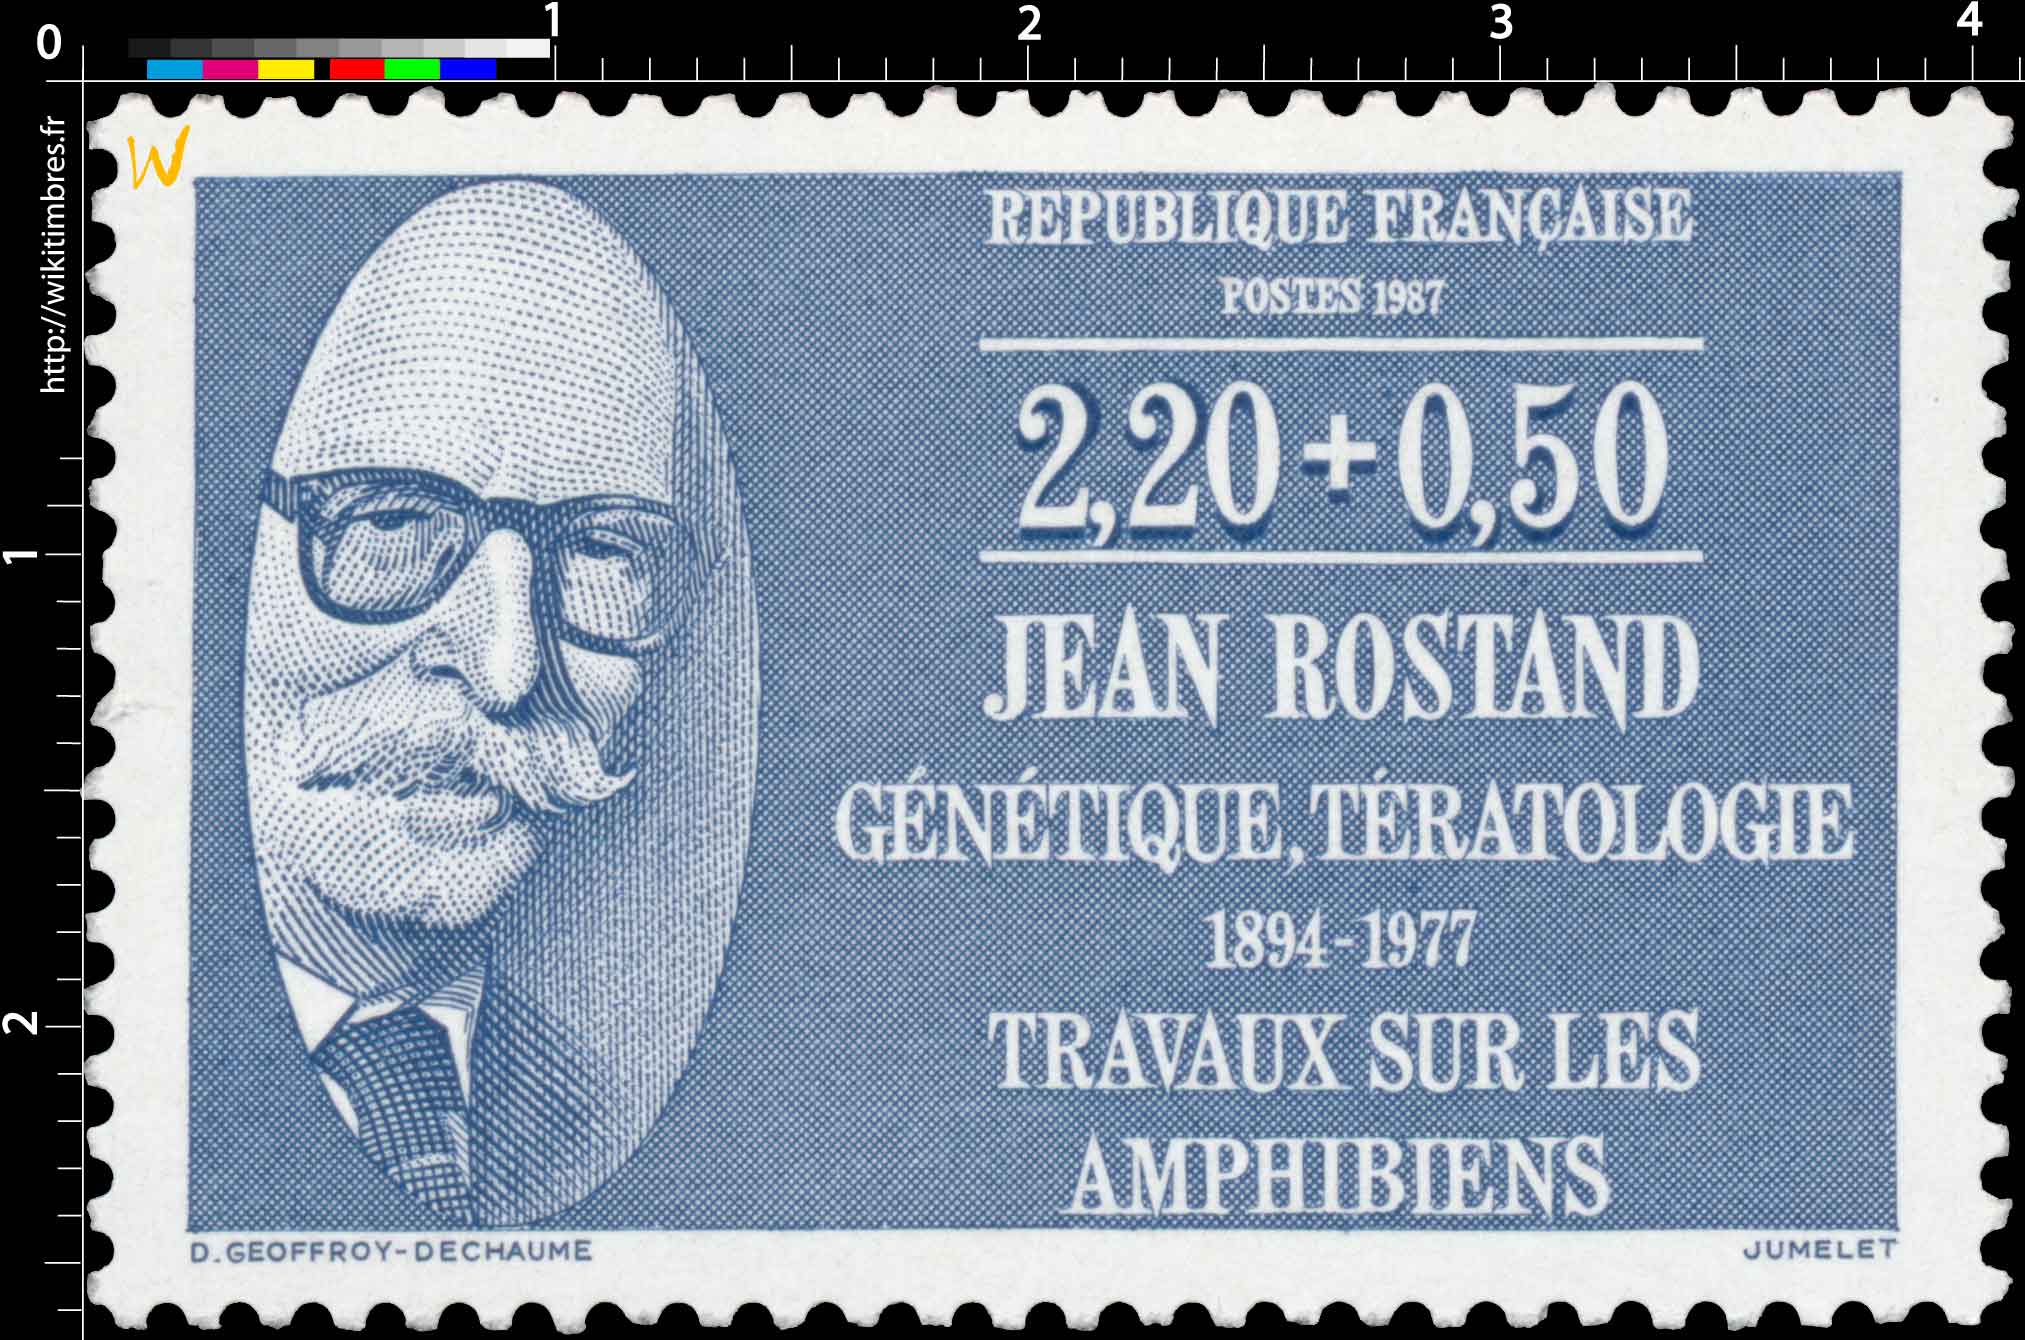 1987 JEAN ROSTAND GÉNÉTIQUE, TÉRATOLOGIE 1894-1977 TRAVAUX SUR LES AMPHIBIENS